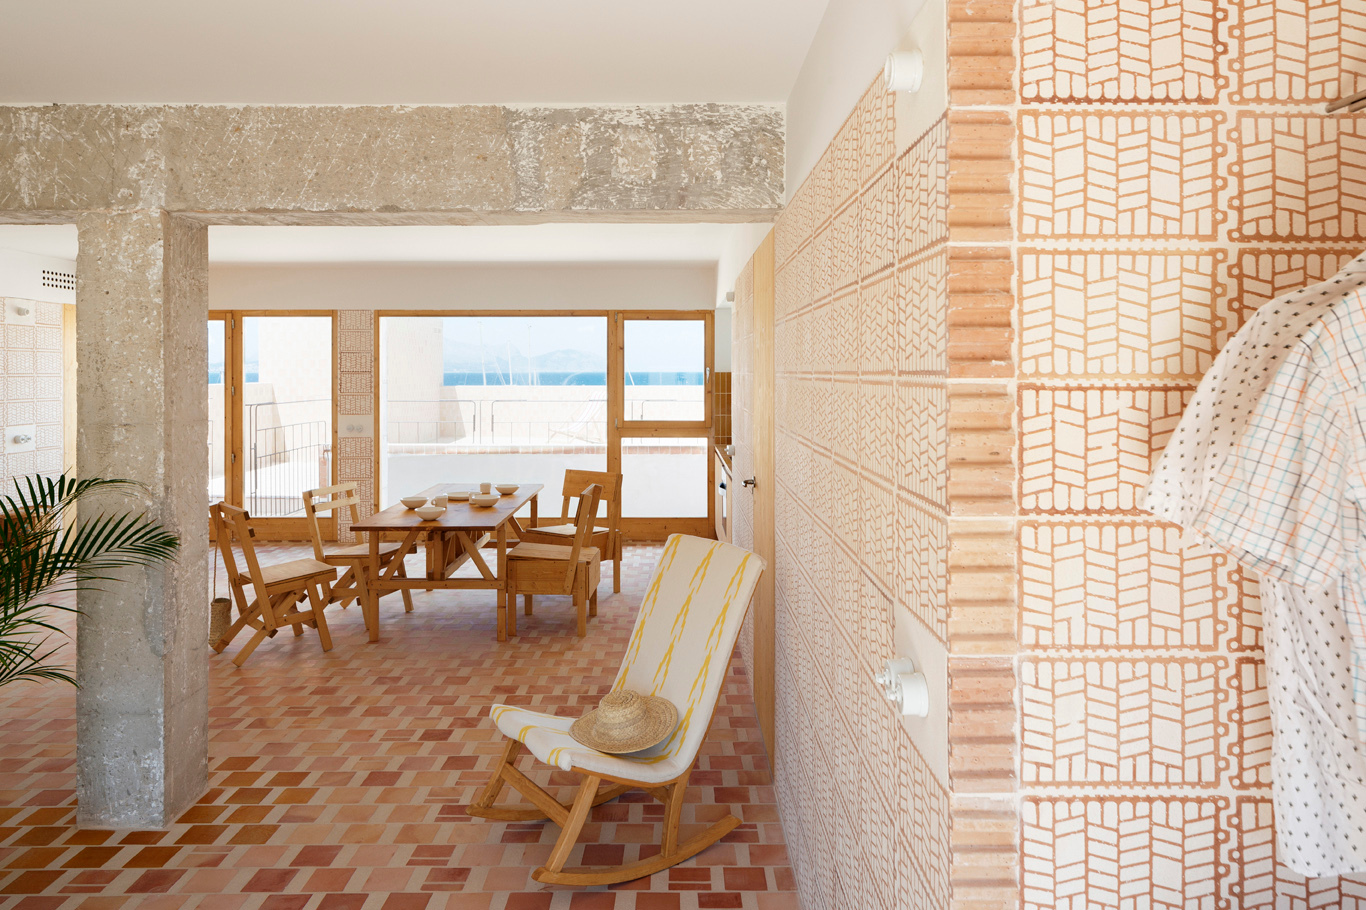 Víťaz kategórie „Modernizácia / Renovácia / Prestavba“: Can Picafort – 4 turistické apartmány, TEd’A arquitectes, Palma de Mallorca, Španielsko